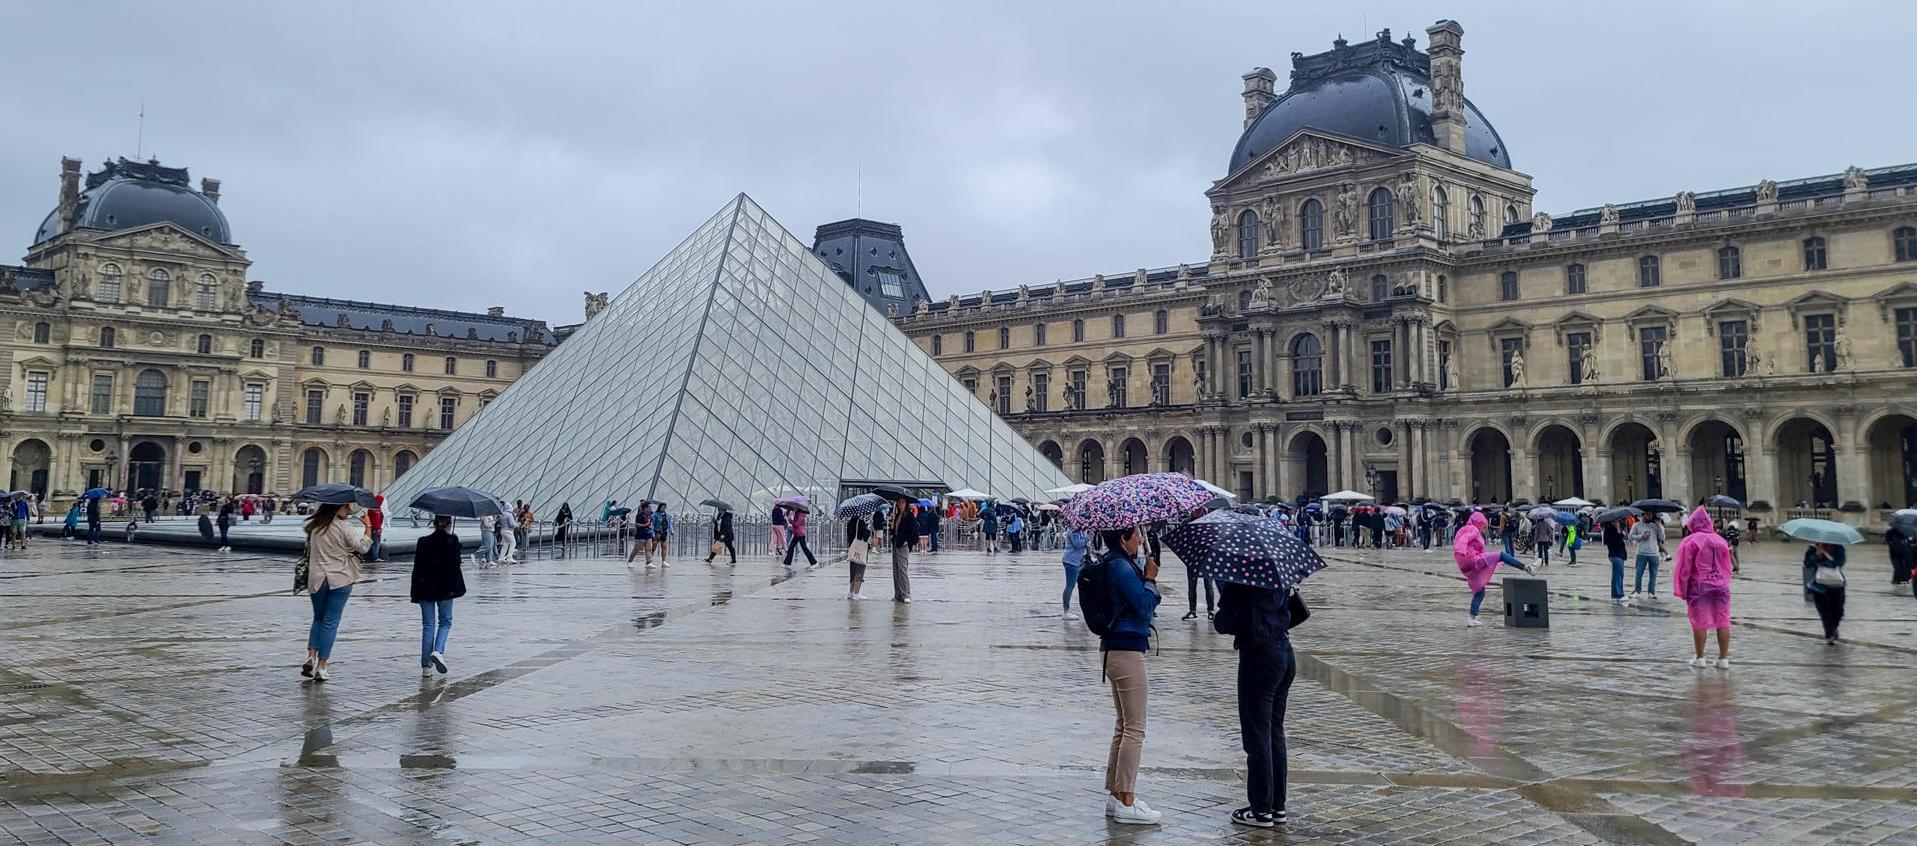 El Museo Louvre que está ubicado en París, Francia.